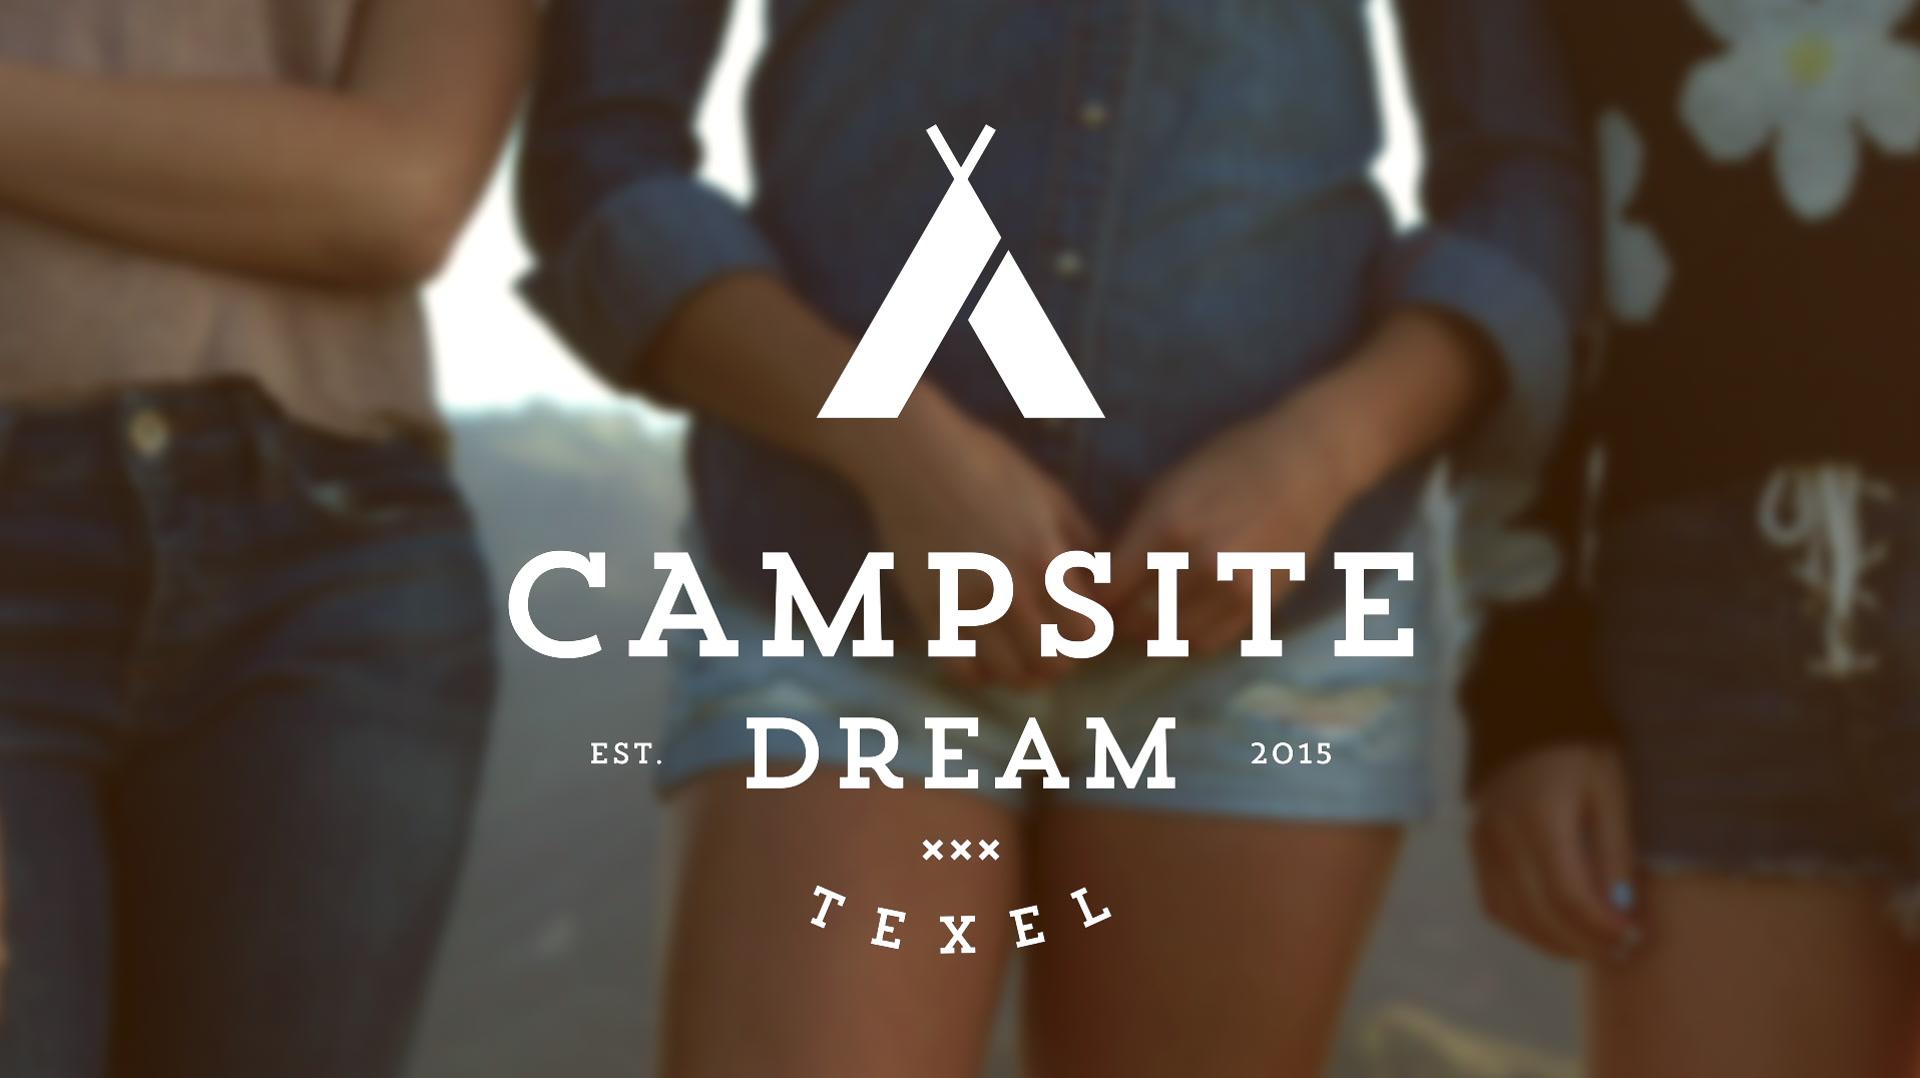 Campsite Dream - Don't Worry (Still)